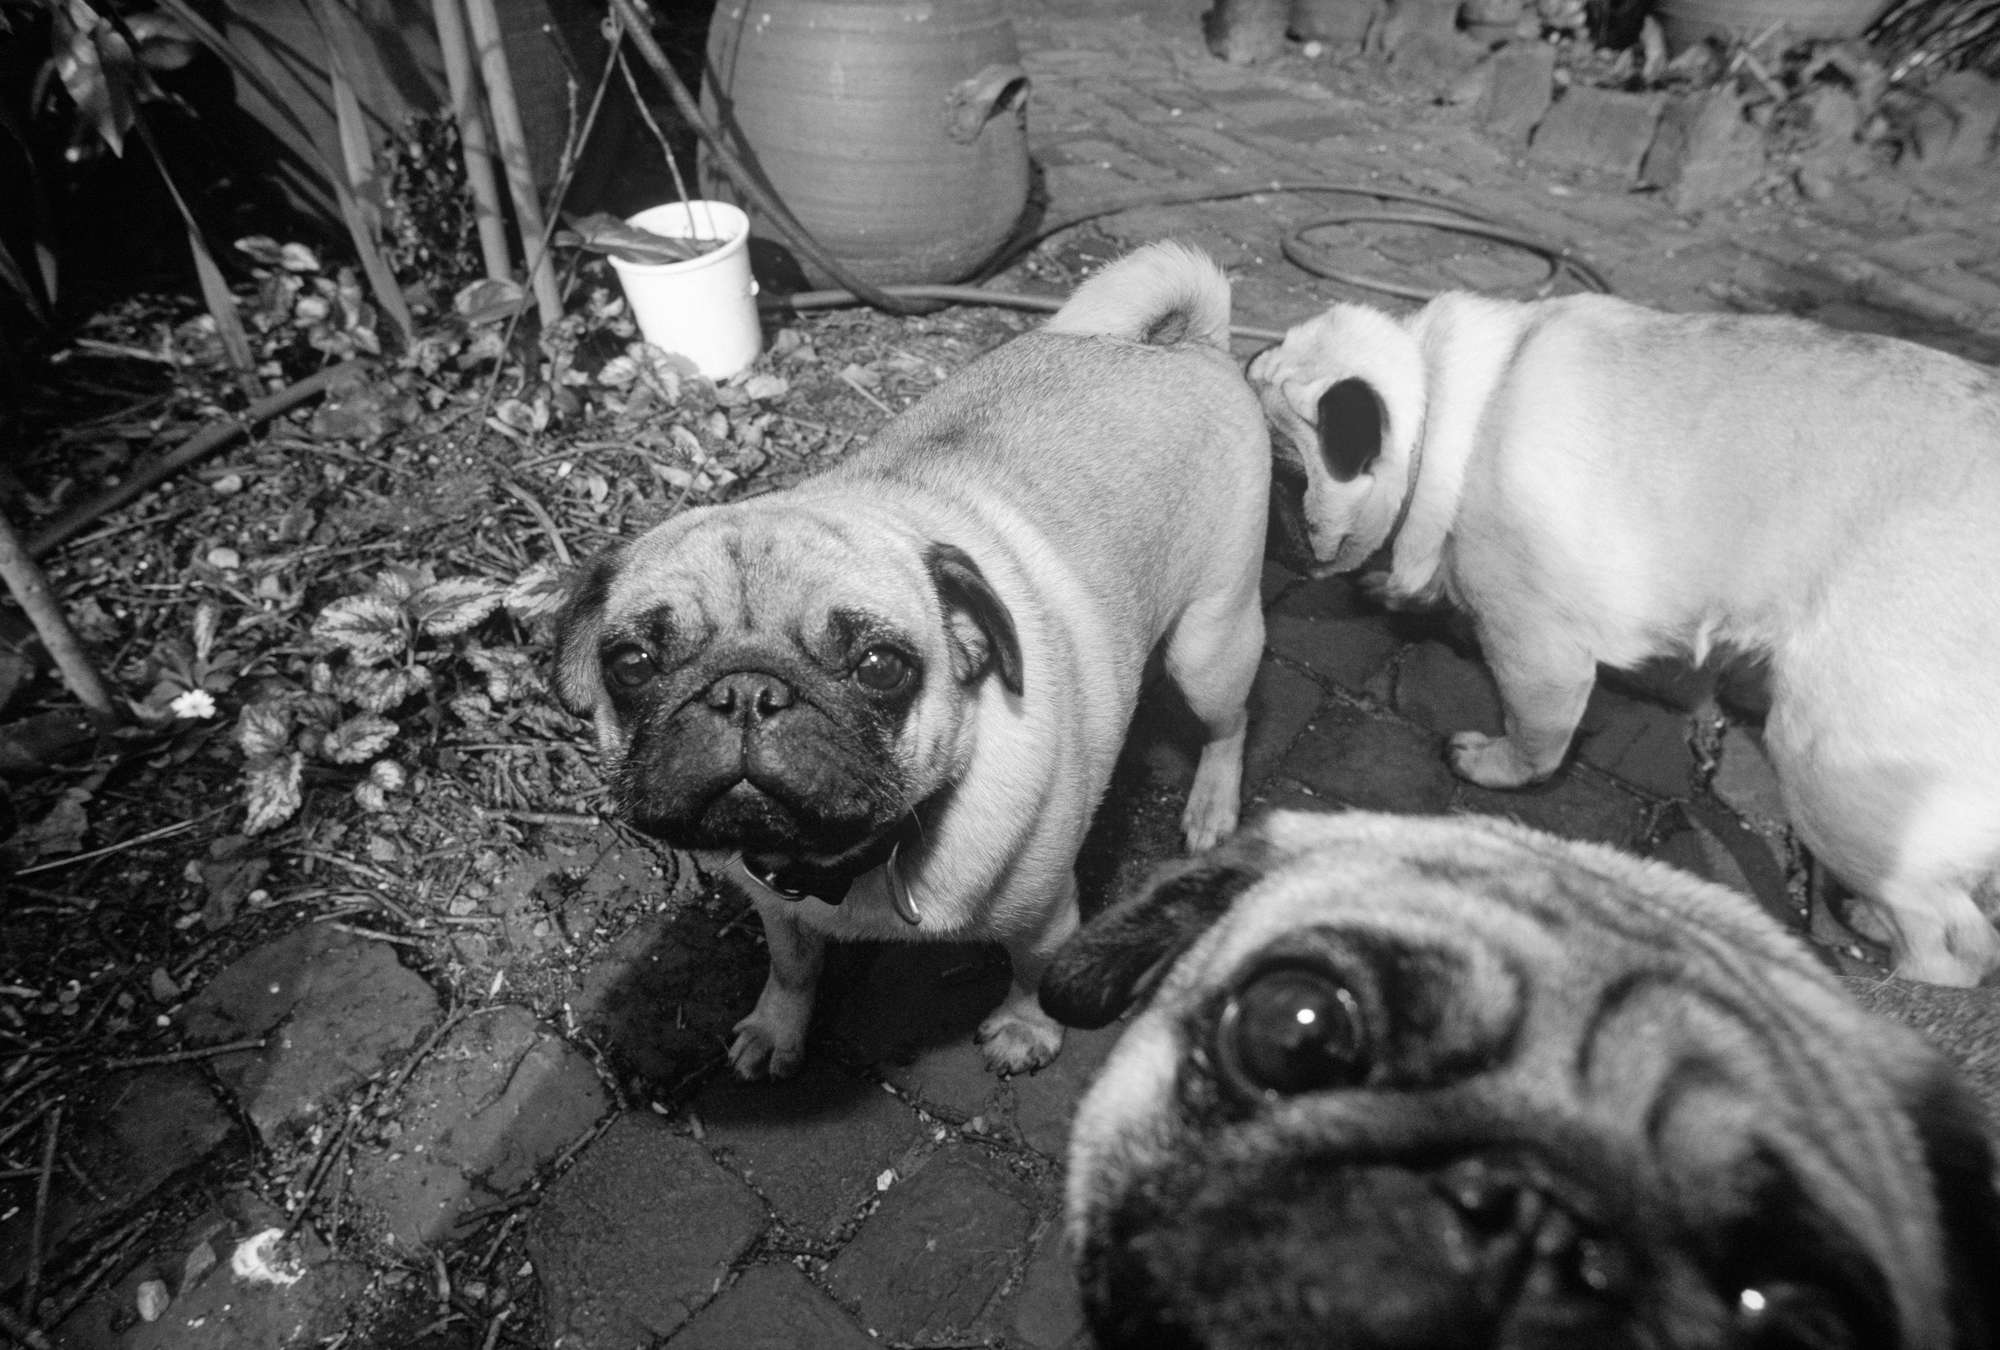             Cuccioli di cane - carta da parati animale domestico carlino in bianco e nero
        